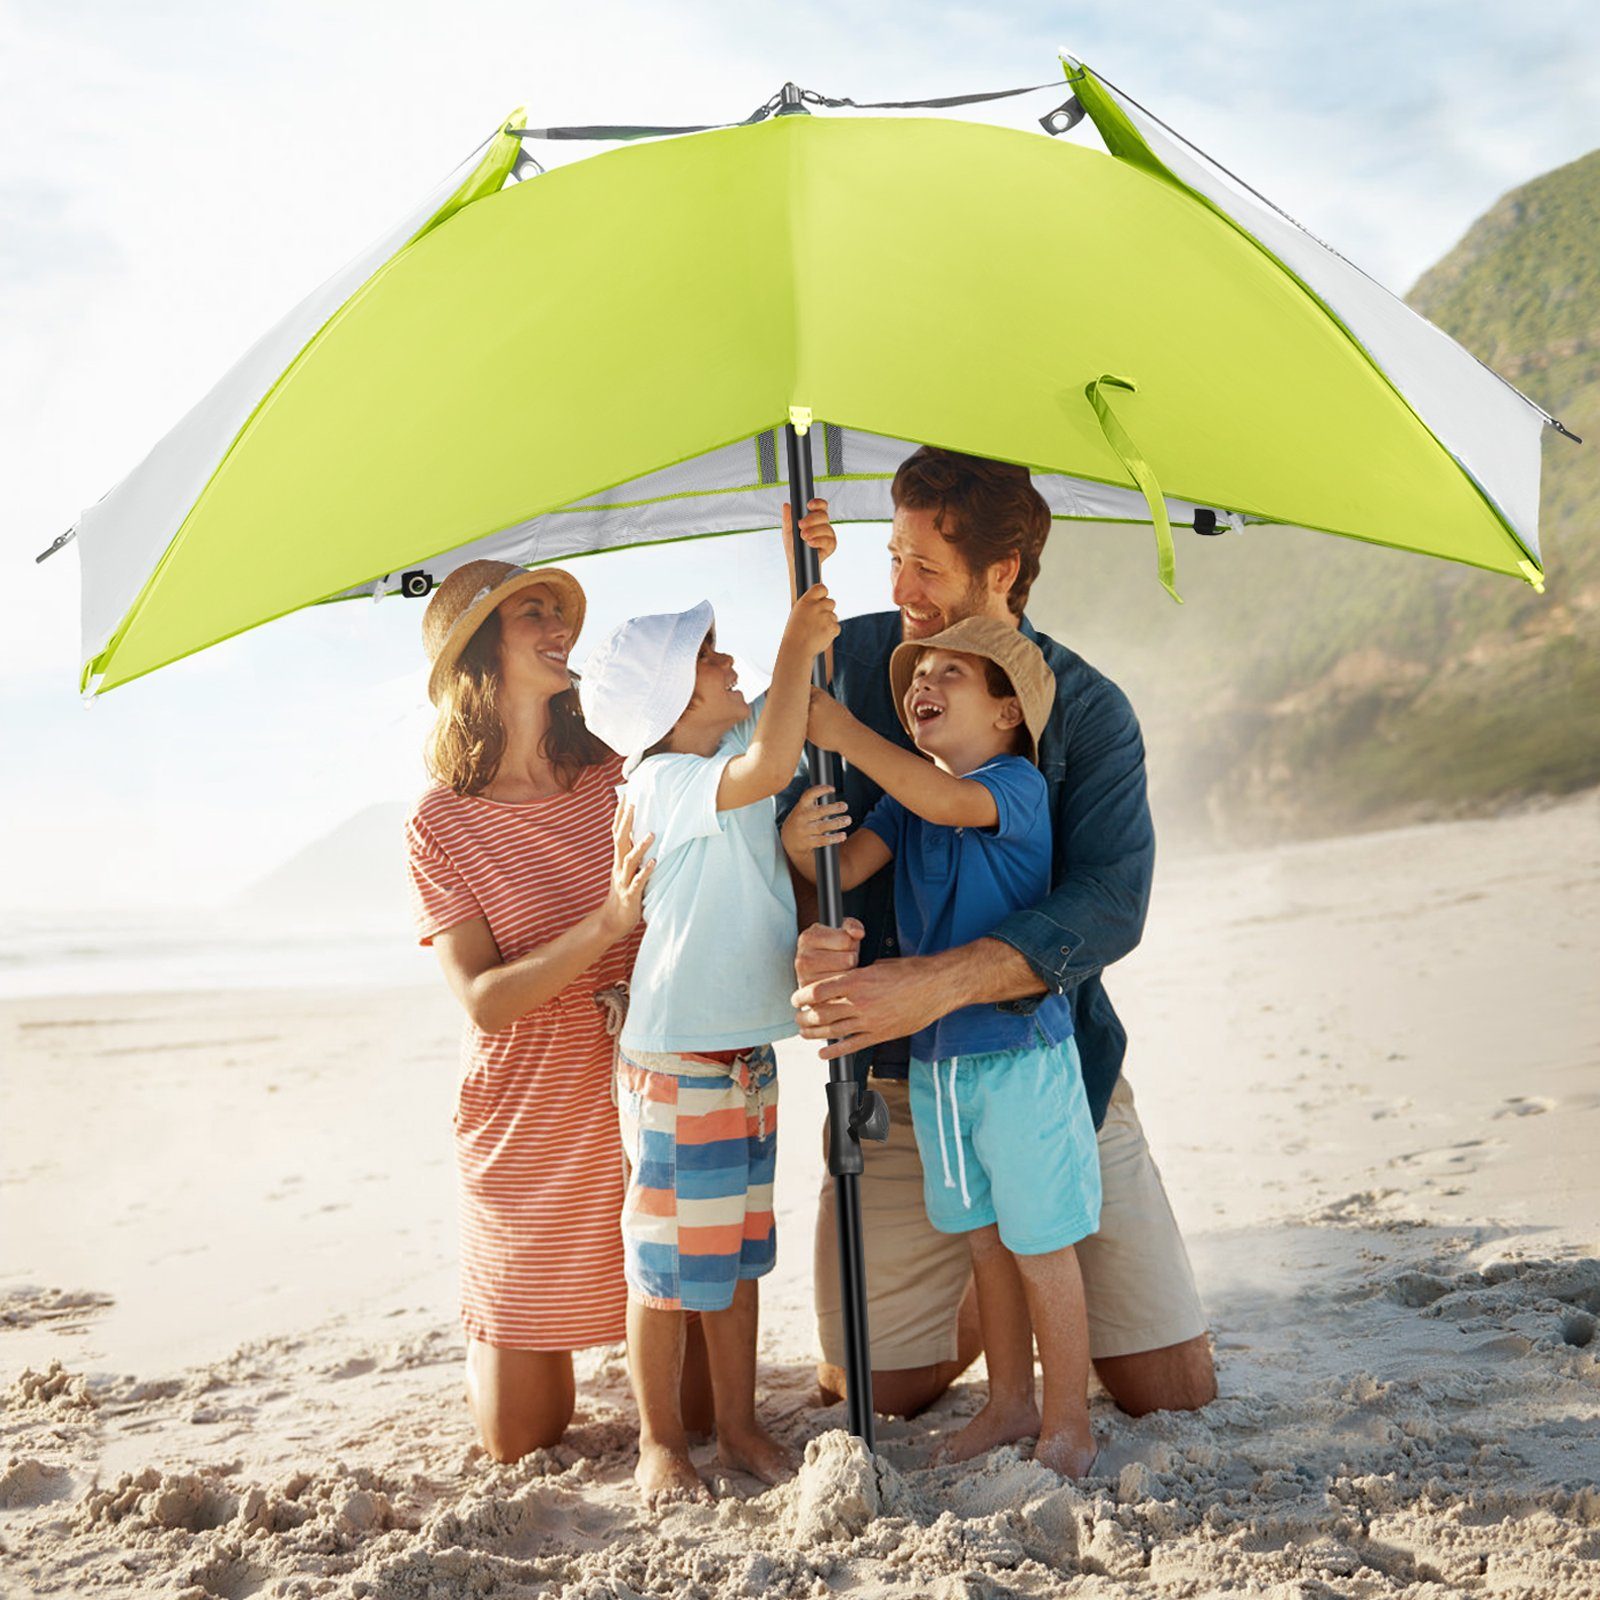 Strandschirm, Sonnenschirm Umfunktionieren Strandmuschel mit 50+ zum UV-resistentes system Khaki, hellgrün 2-3 für umbrella Personen HOMECALL